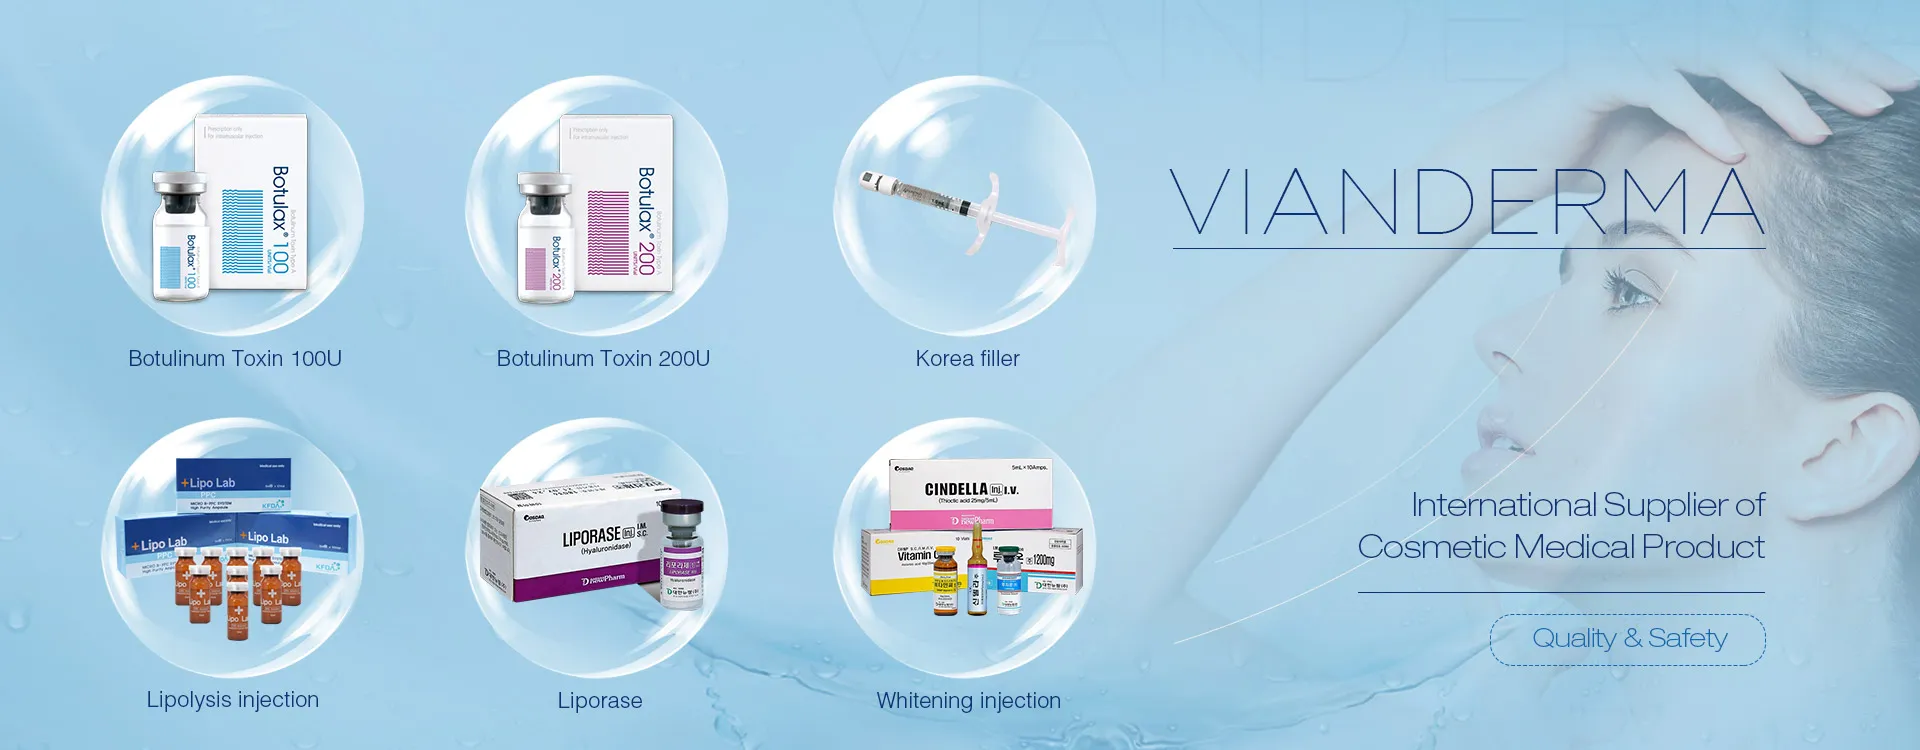 VIANDERMA - международный поставщик косметического медицинского продукта